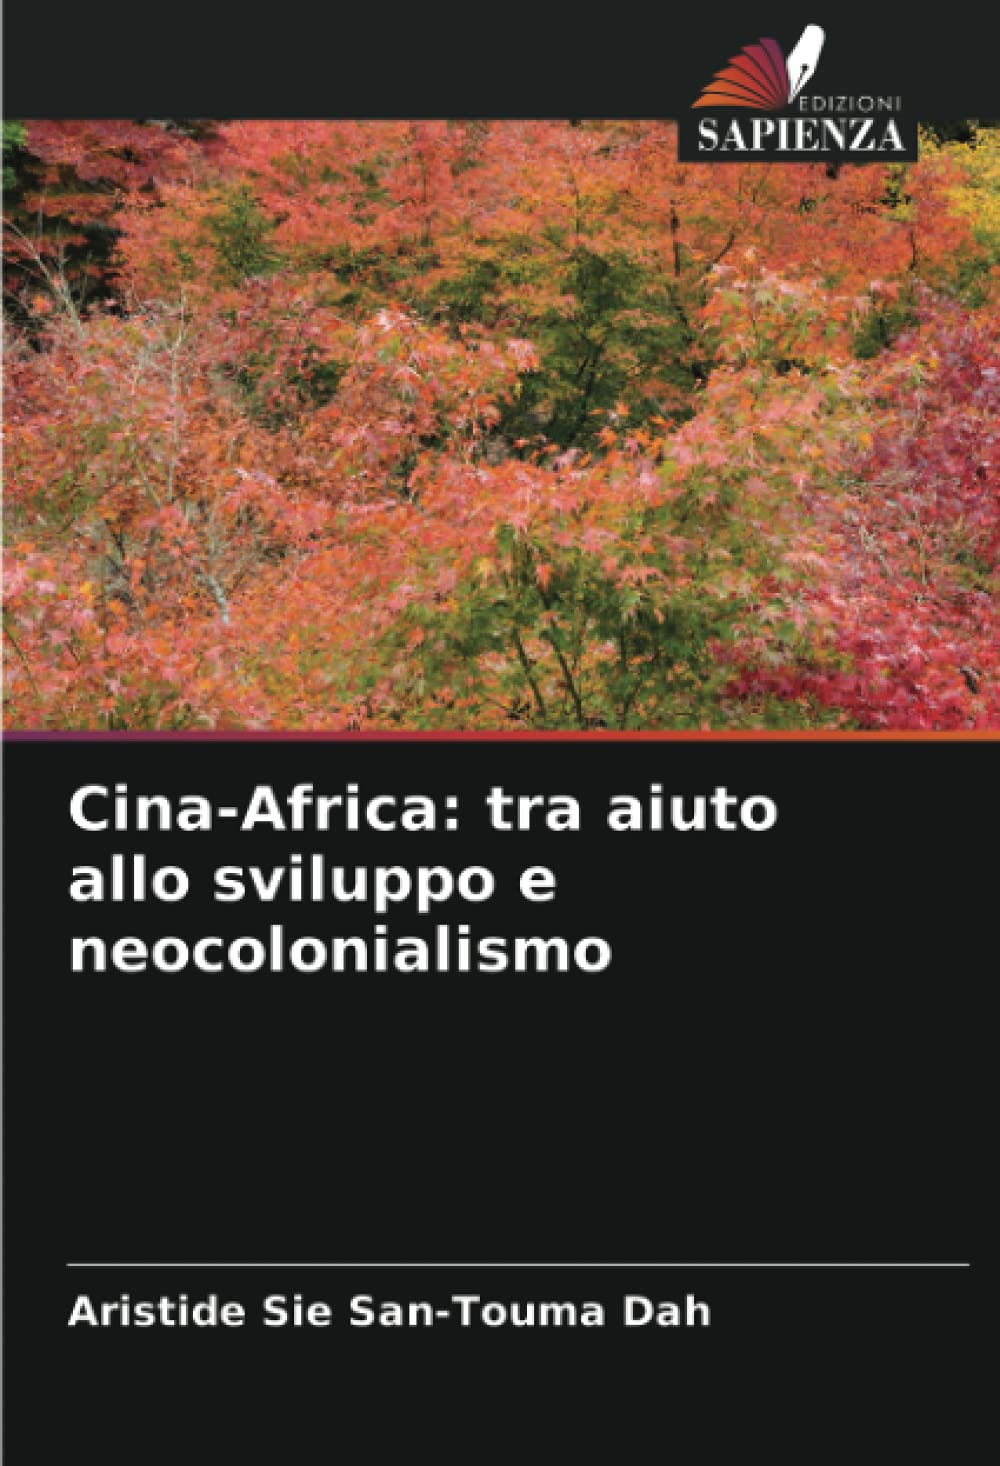 Cina-Africa: tra aiuto allo sviluppo e neocolonialismo